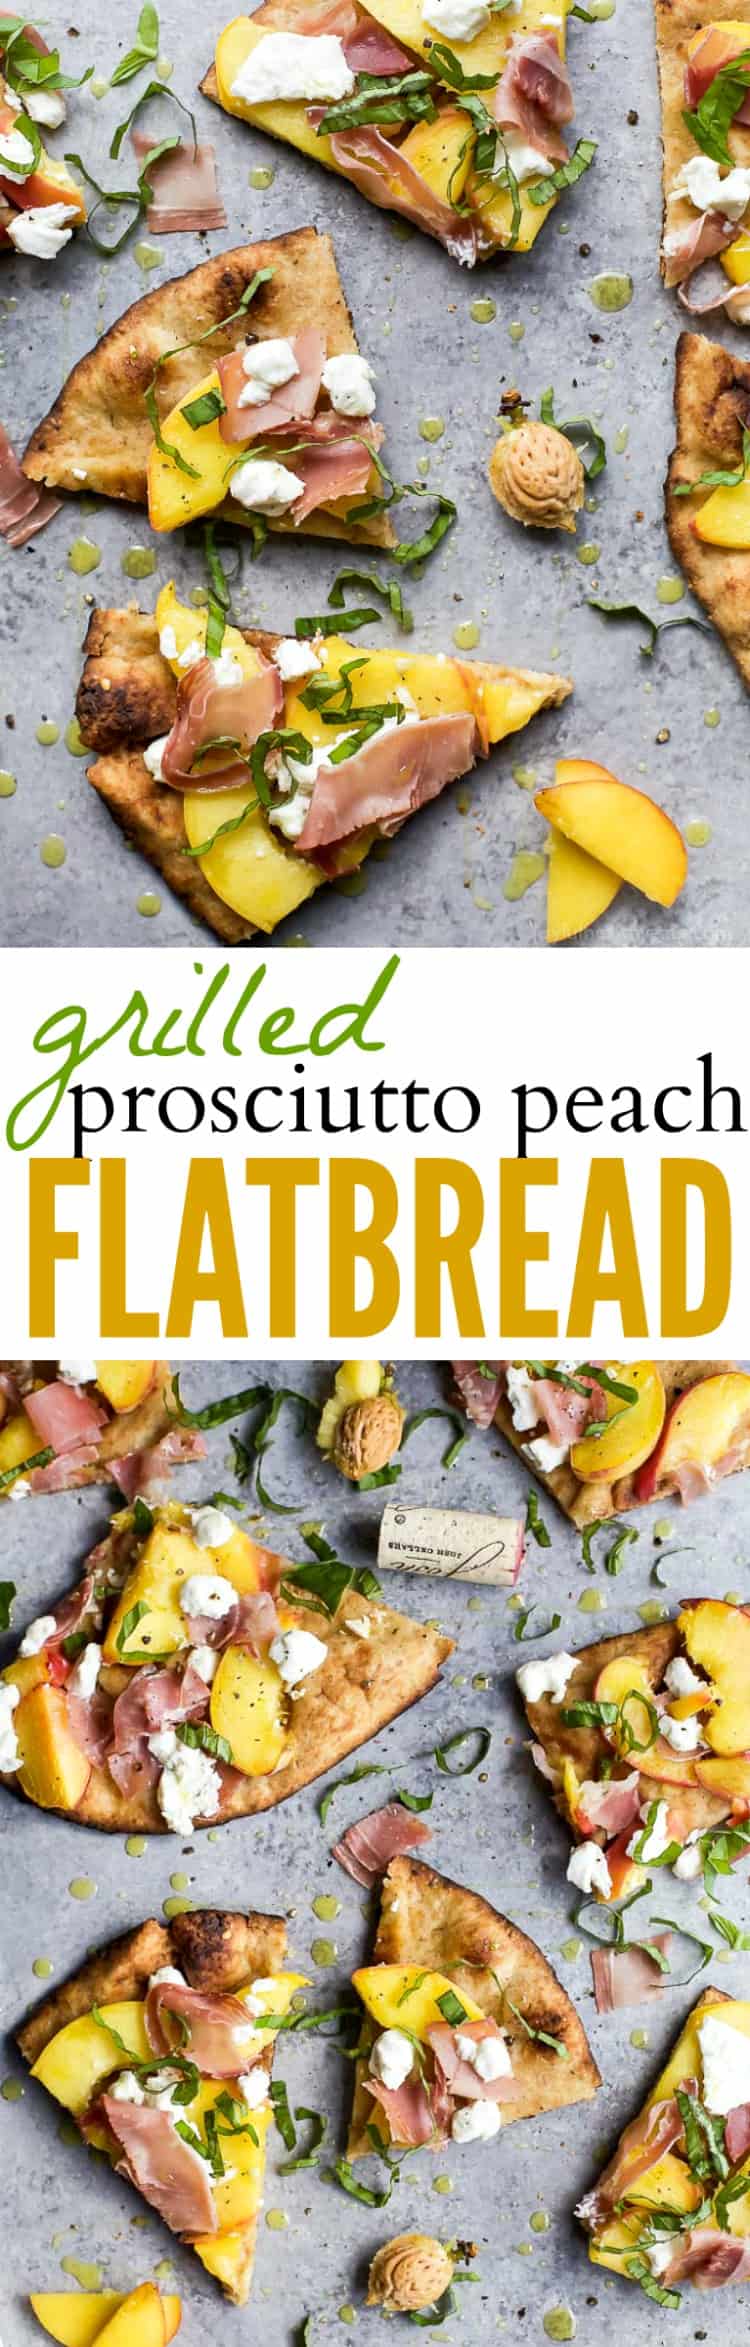 Recipe collage for Grilled Prosciutto Peach Flatbread